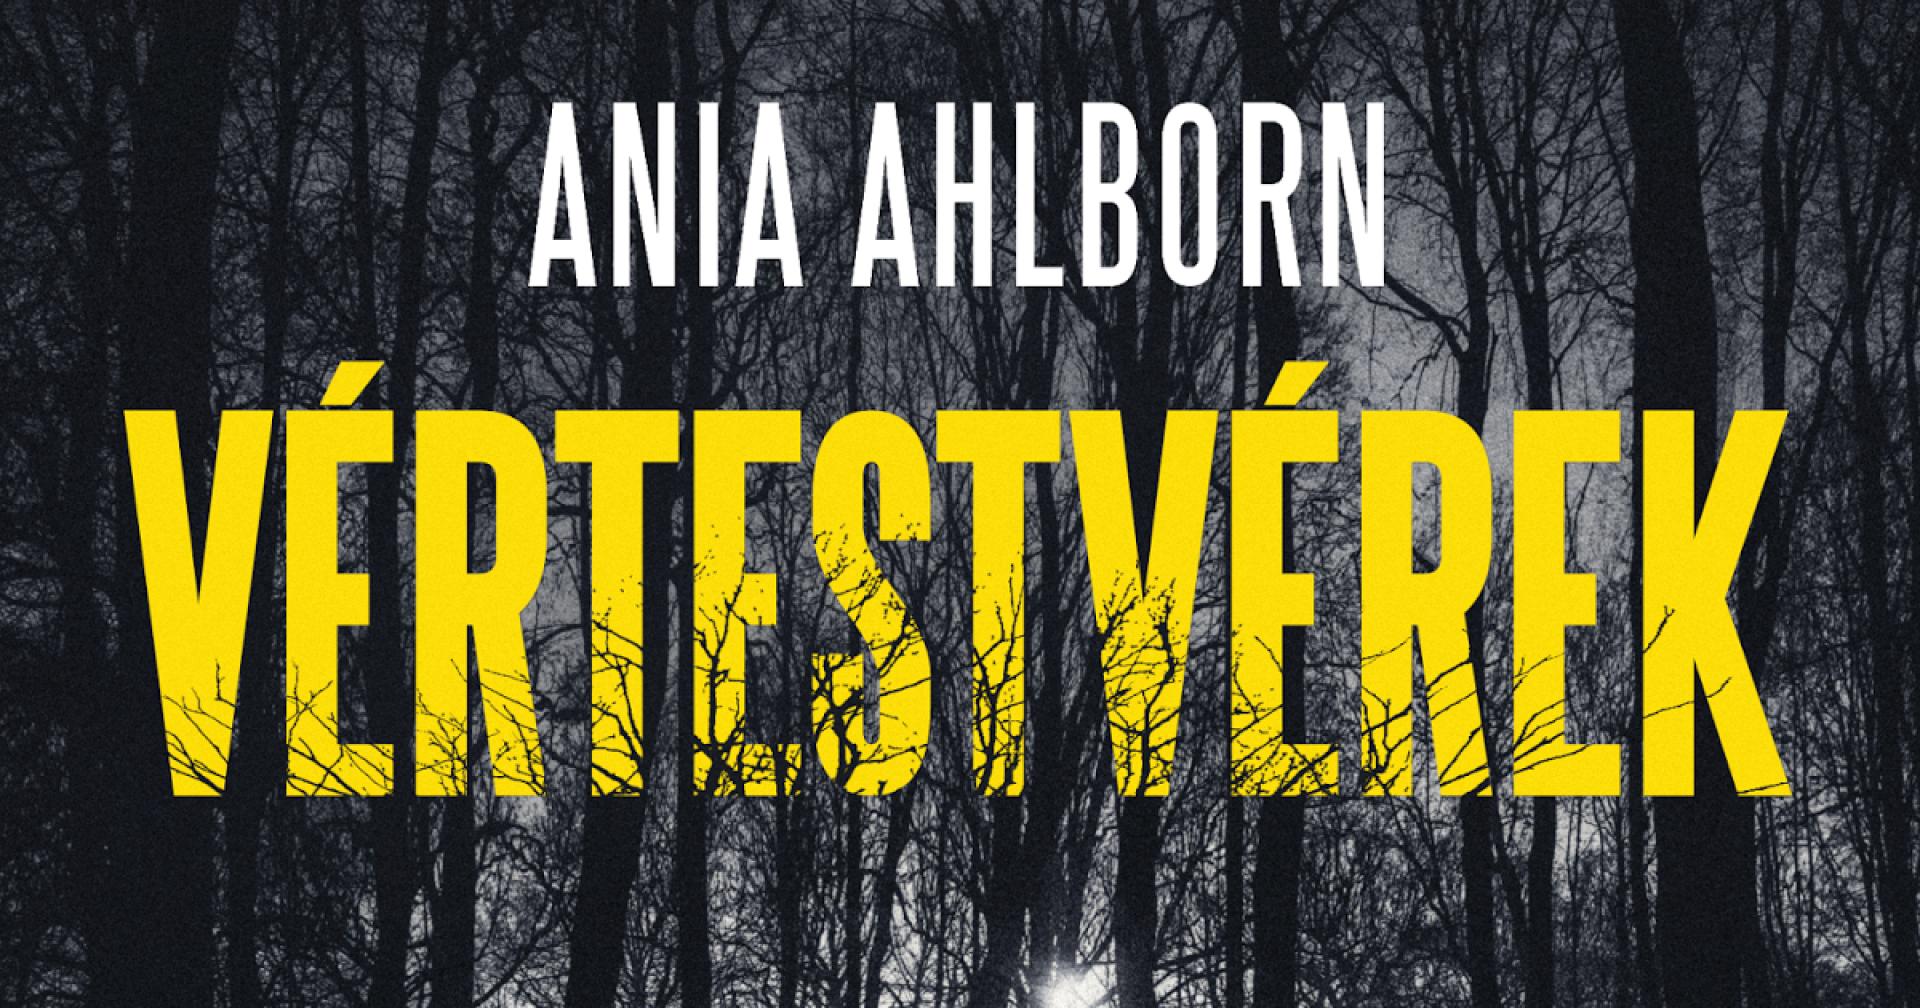 Ania Ahlborn: Vértestvérek / Brother (2015)